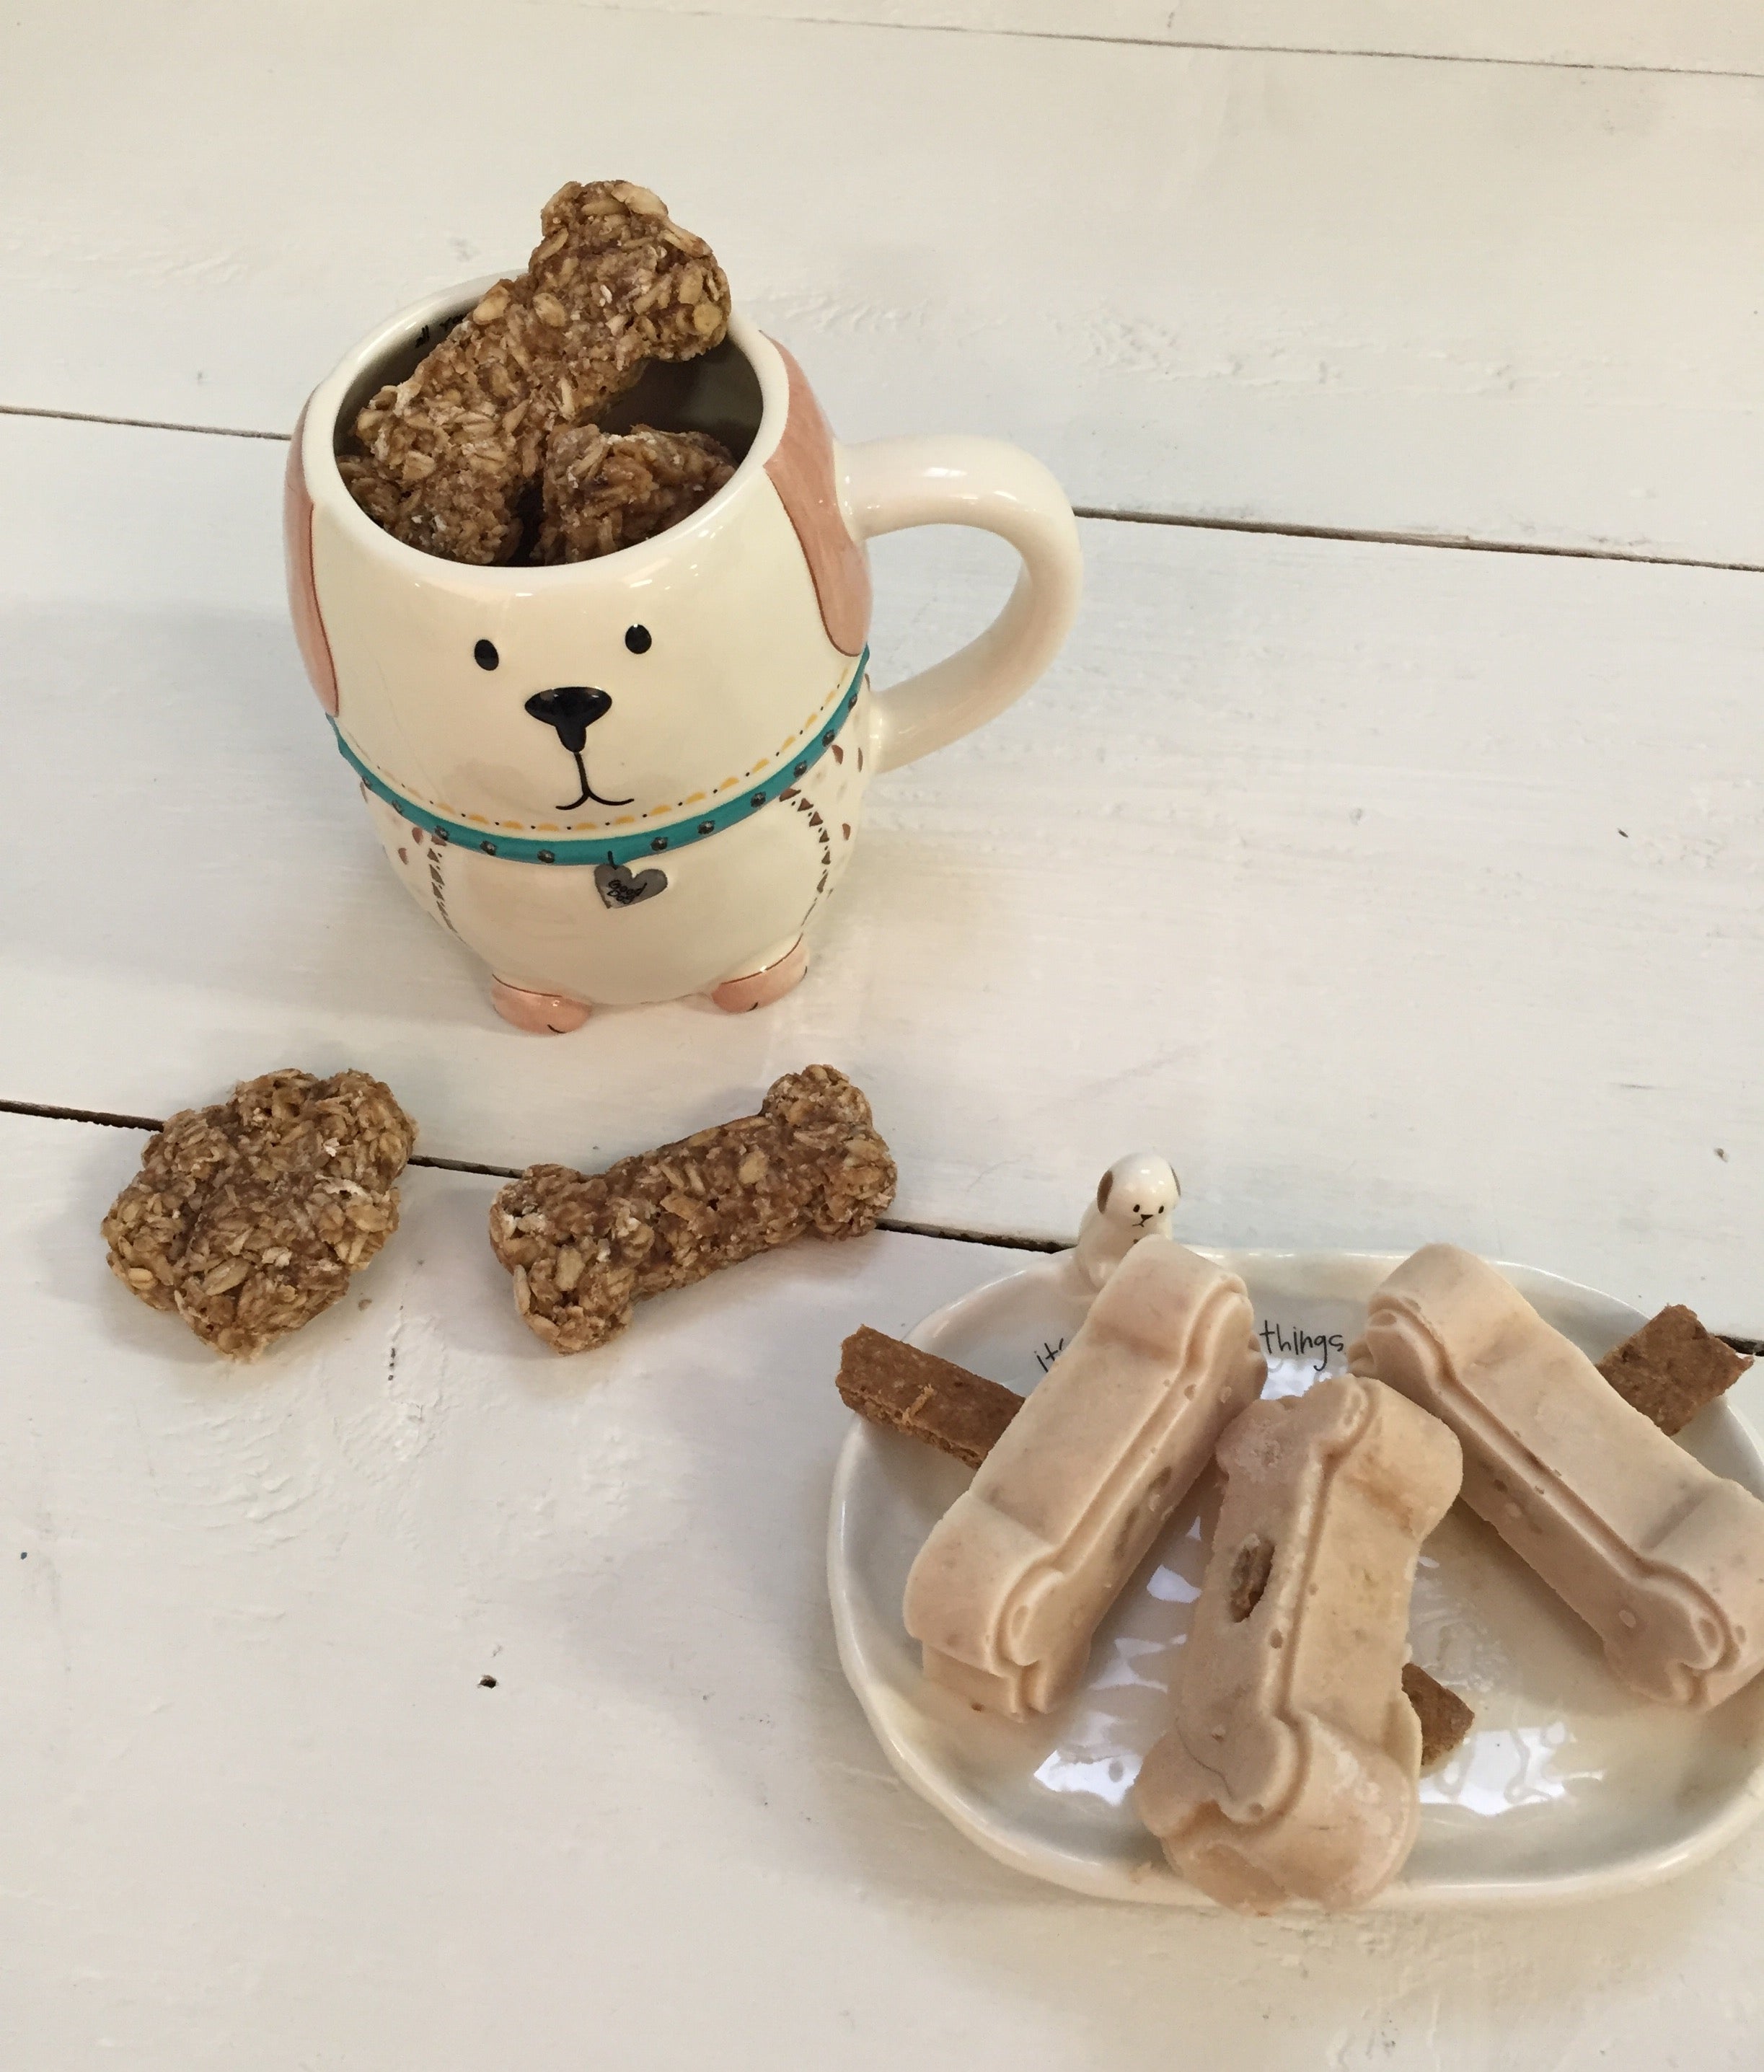 Homemade dog treats in a Natural Life mug